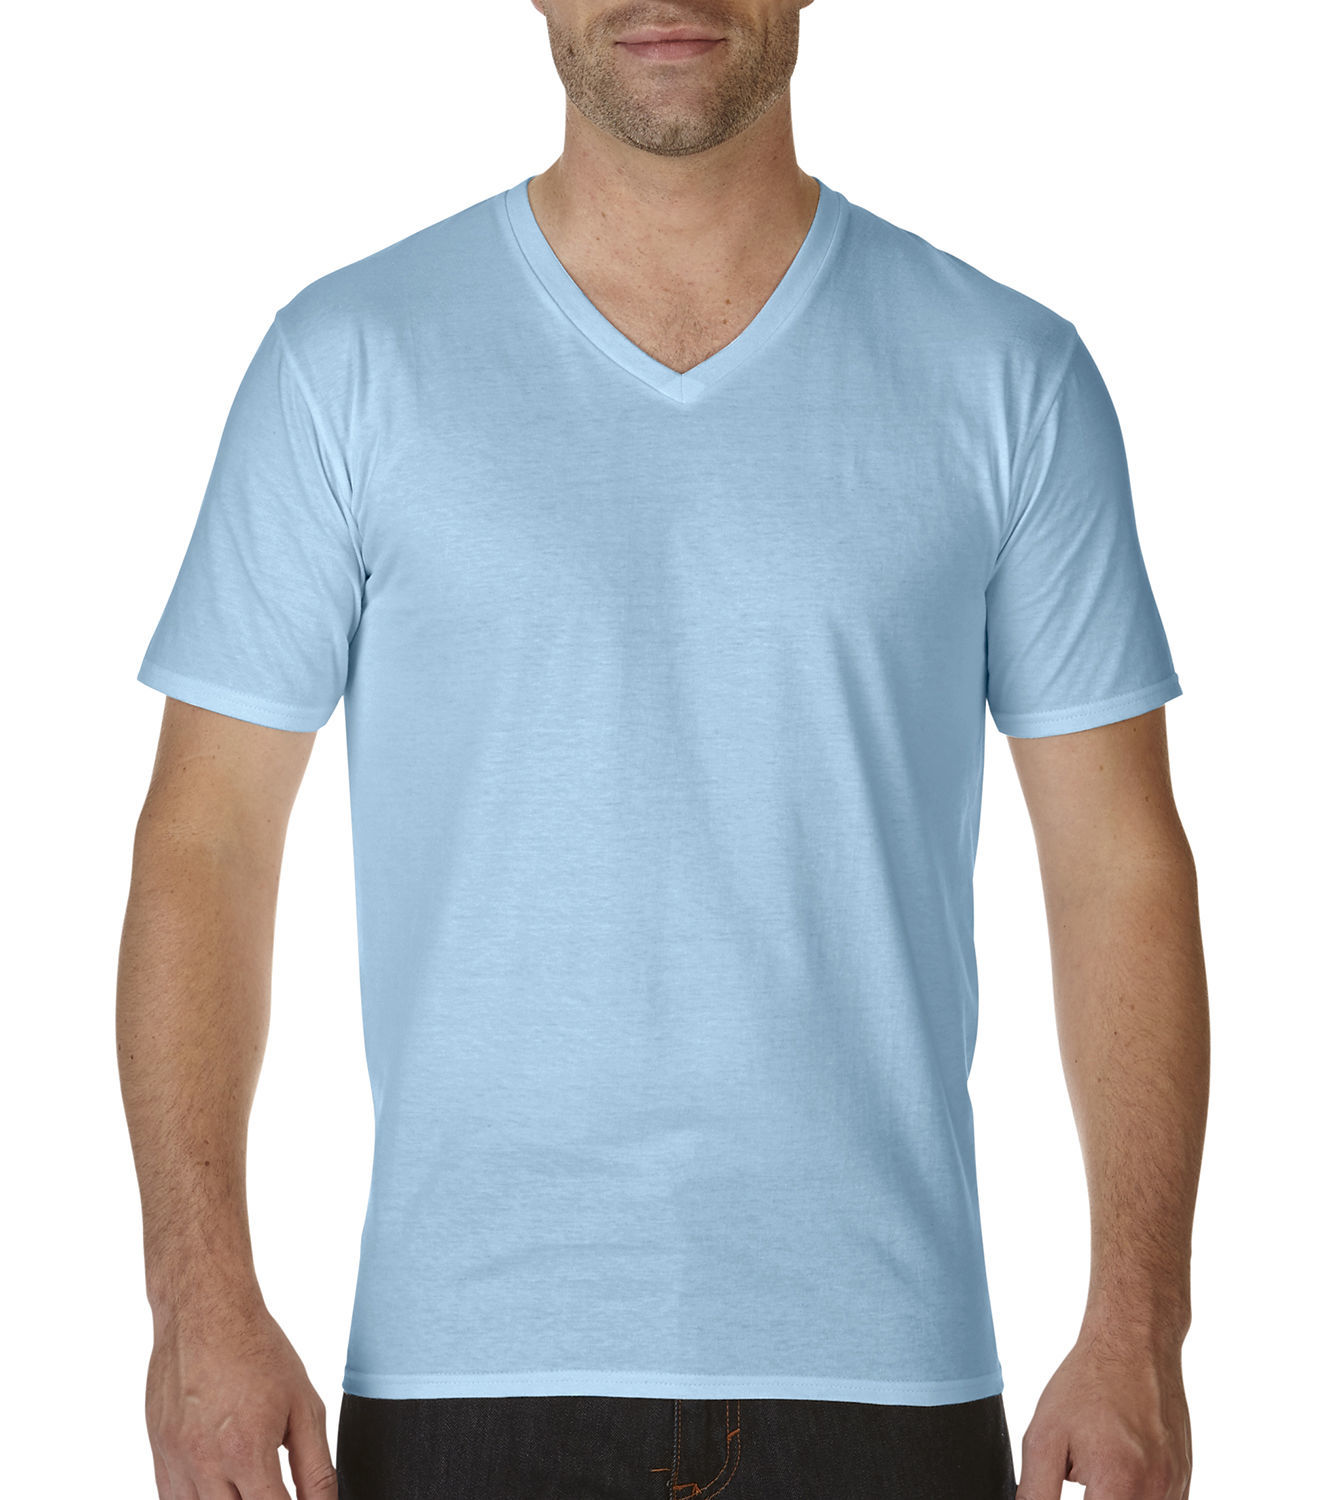 Tee-shirt homme Bleu Blanc à Col ouvert à boutons fantaisie. Conçu